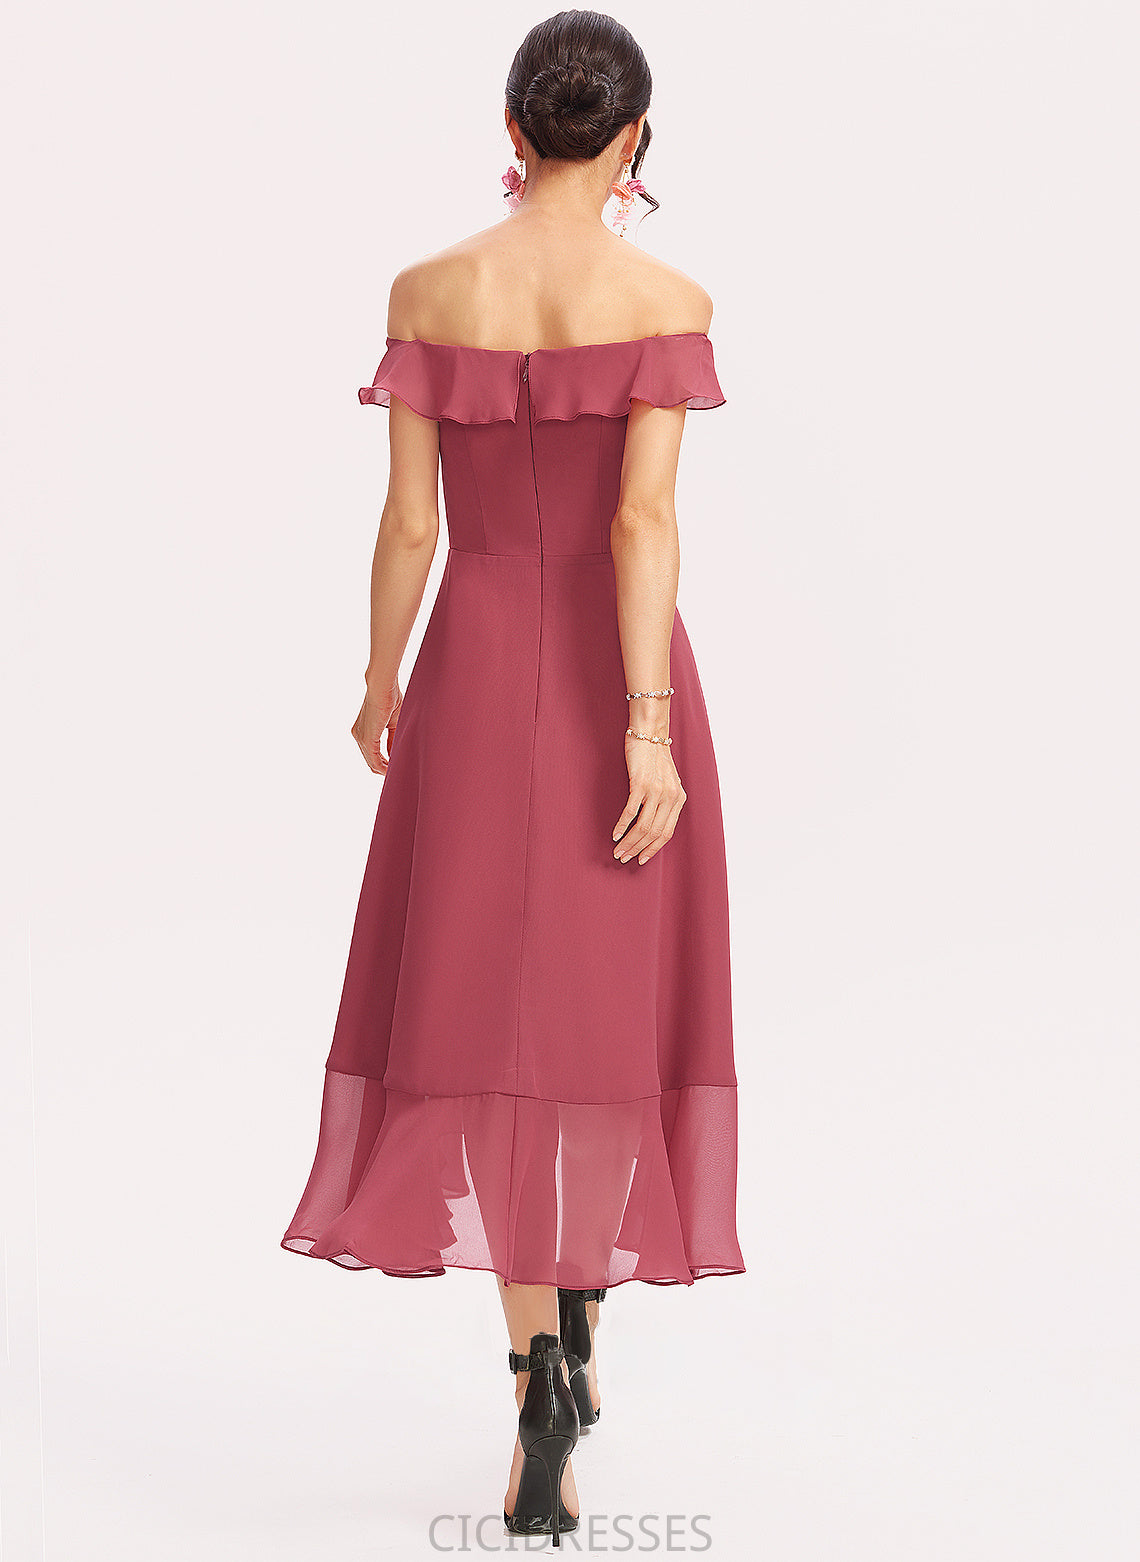 Off-the-Shoulder Tea-Length Neckline Fabric A-Line Embellishment Silhouette CascadingRuffles Length Lilyana Sleeveless Natural Waist Bridesmaid Dresses